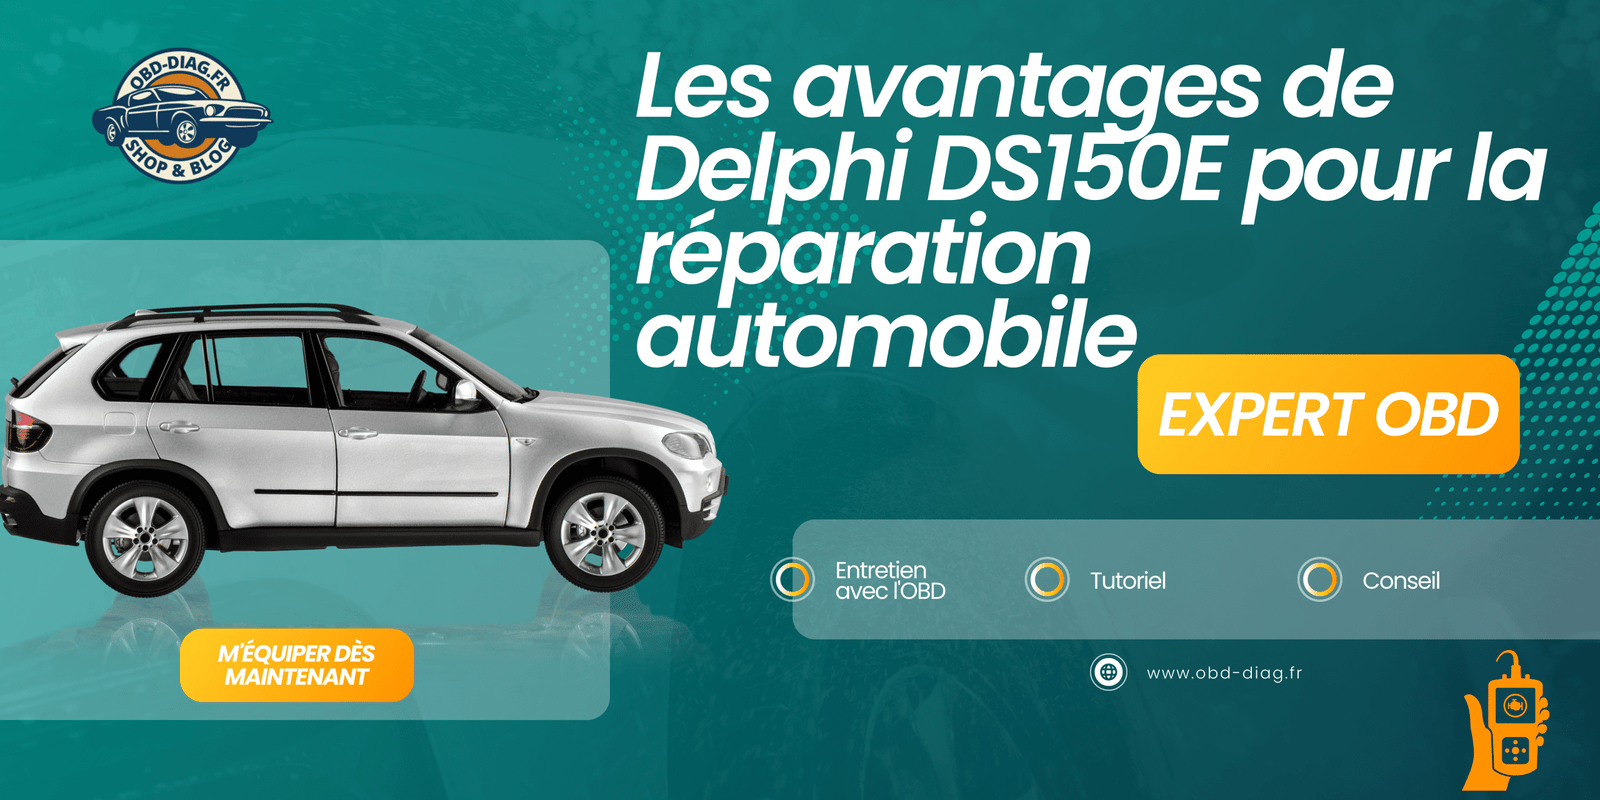 Les avantages de Delphi DS150E pour la réparation automobile